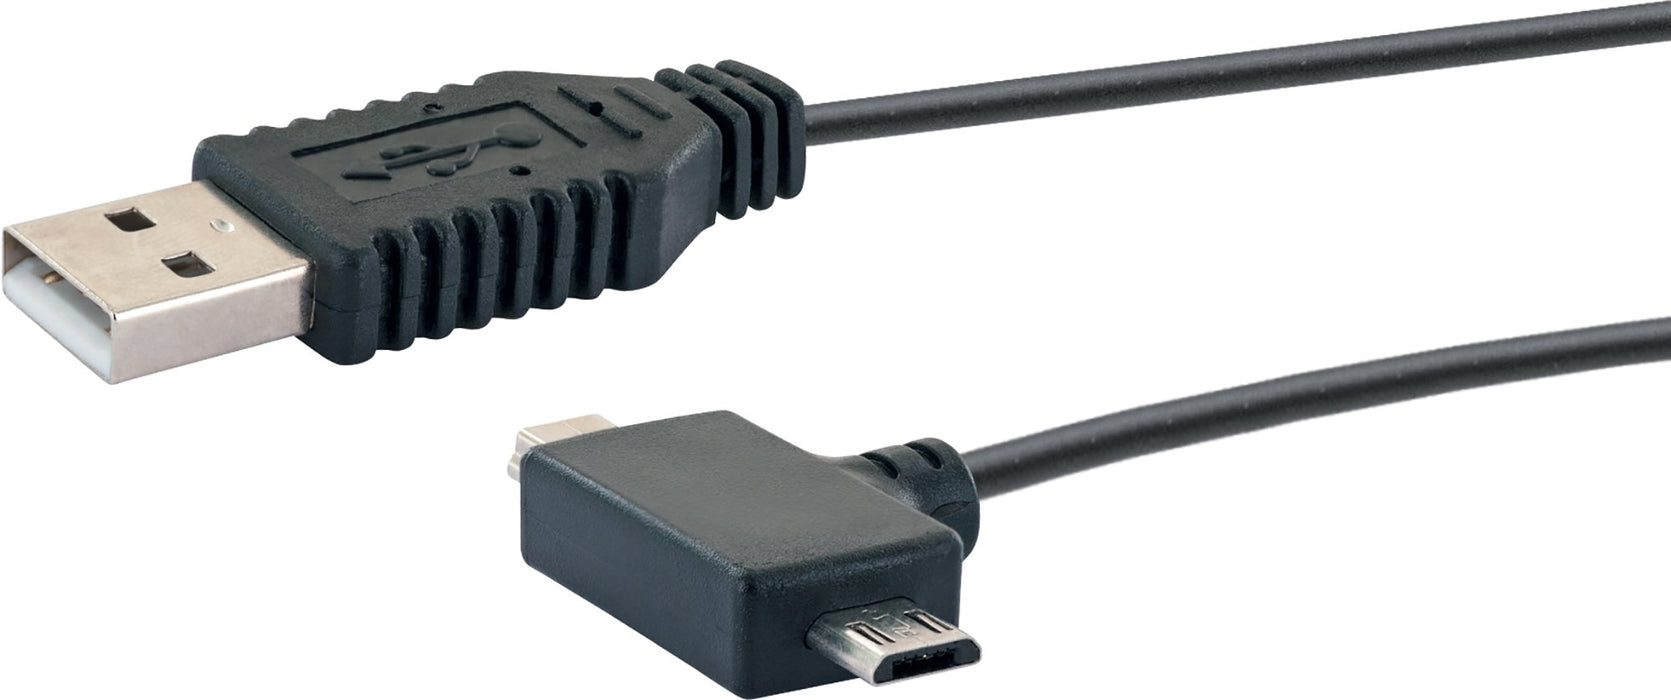 USB 2.0 Anschlusskabel